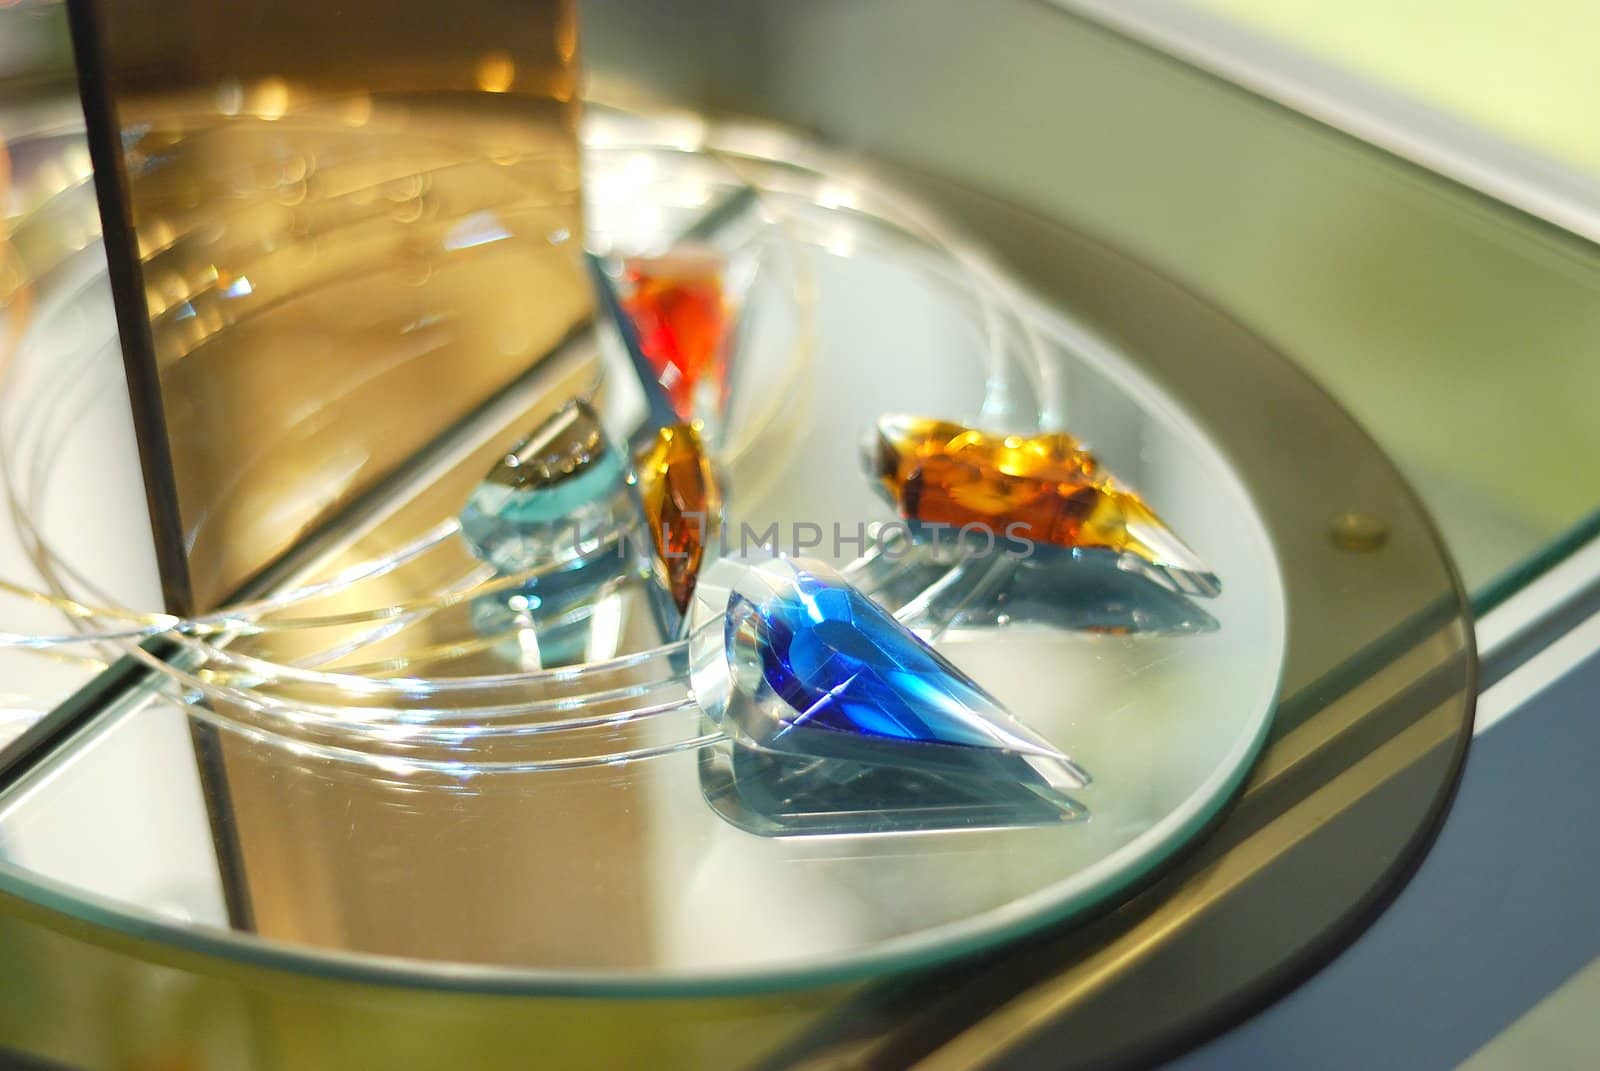 blue diamond on a glass table